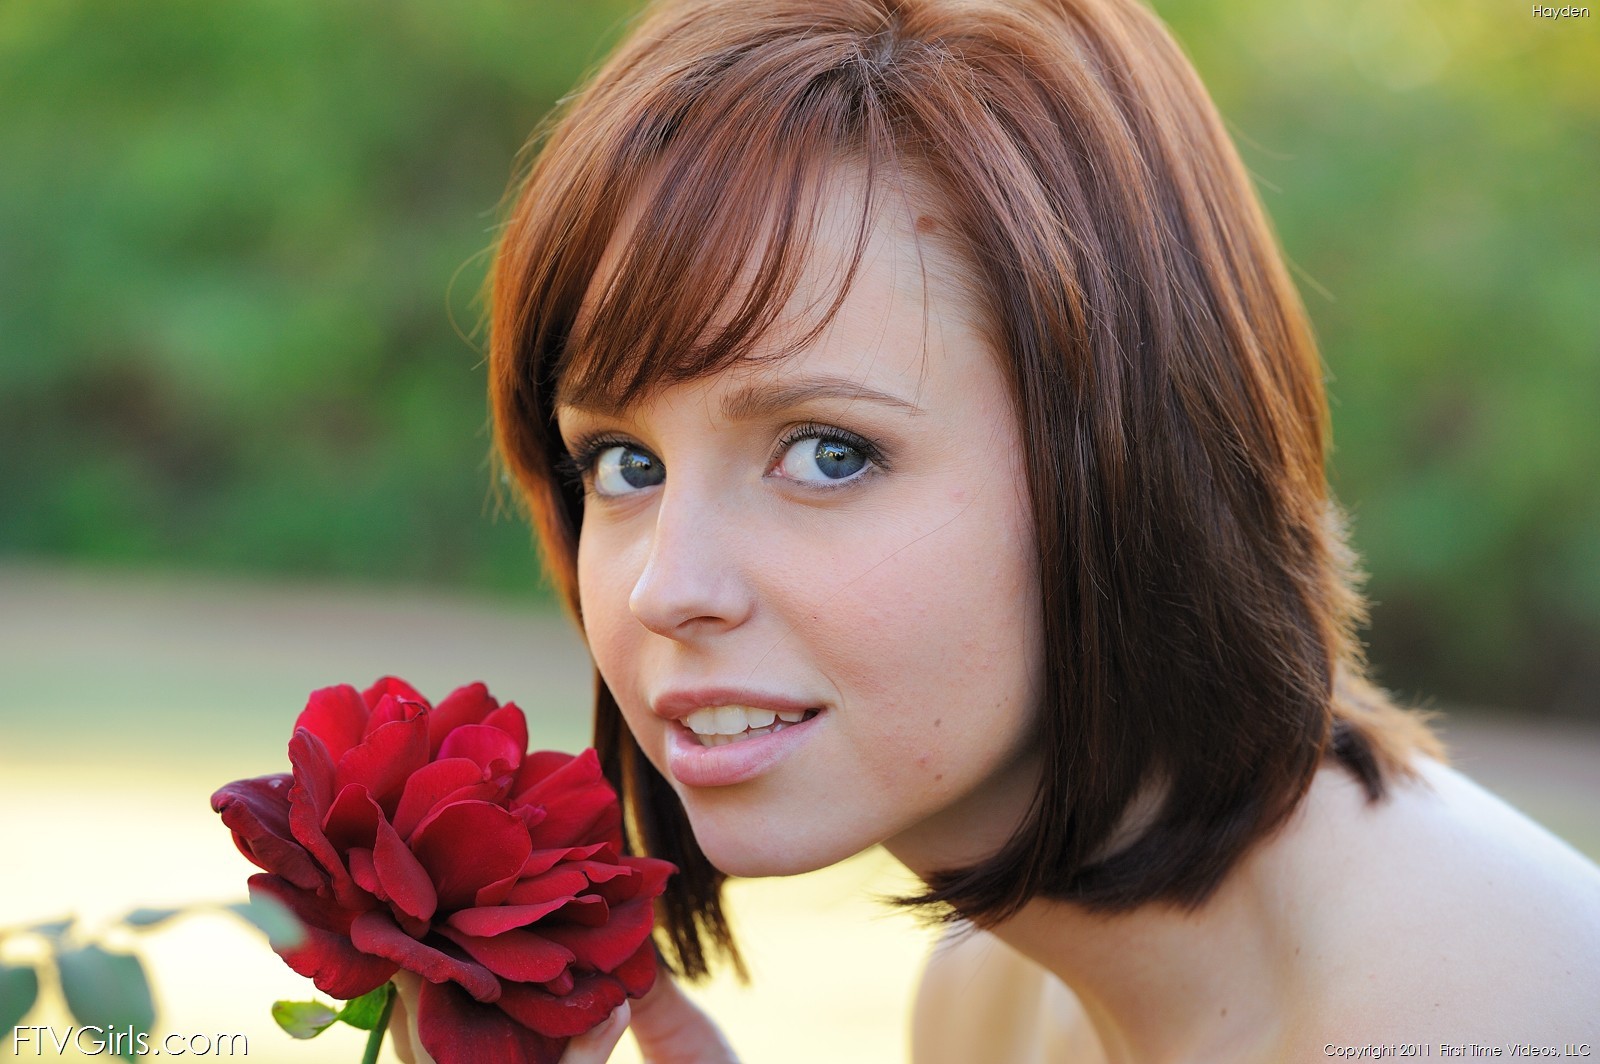 Women Pornstar Redhead Short Hair Hayden Winters Face Looking At Viewer Women Outdoors